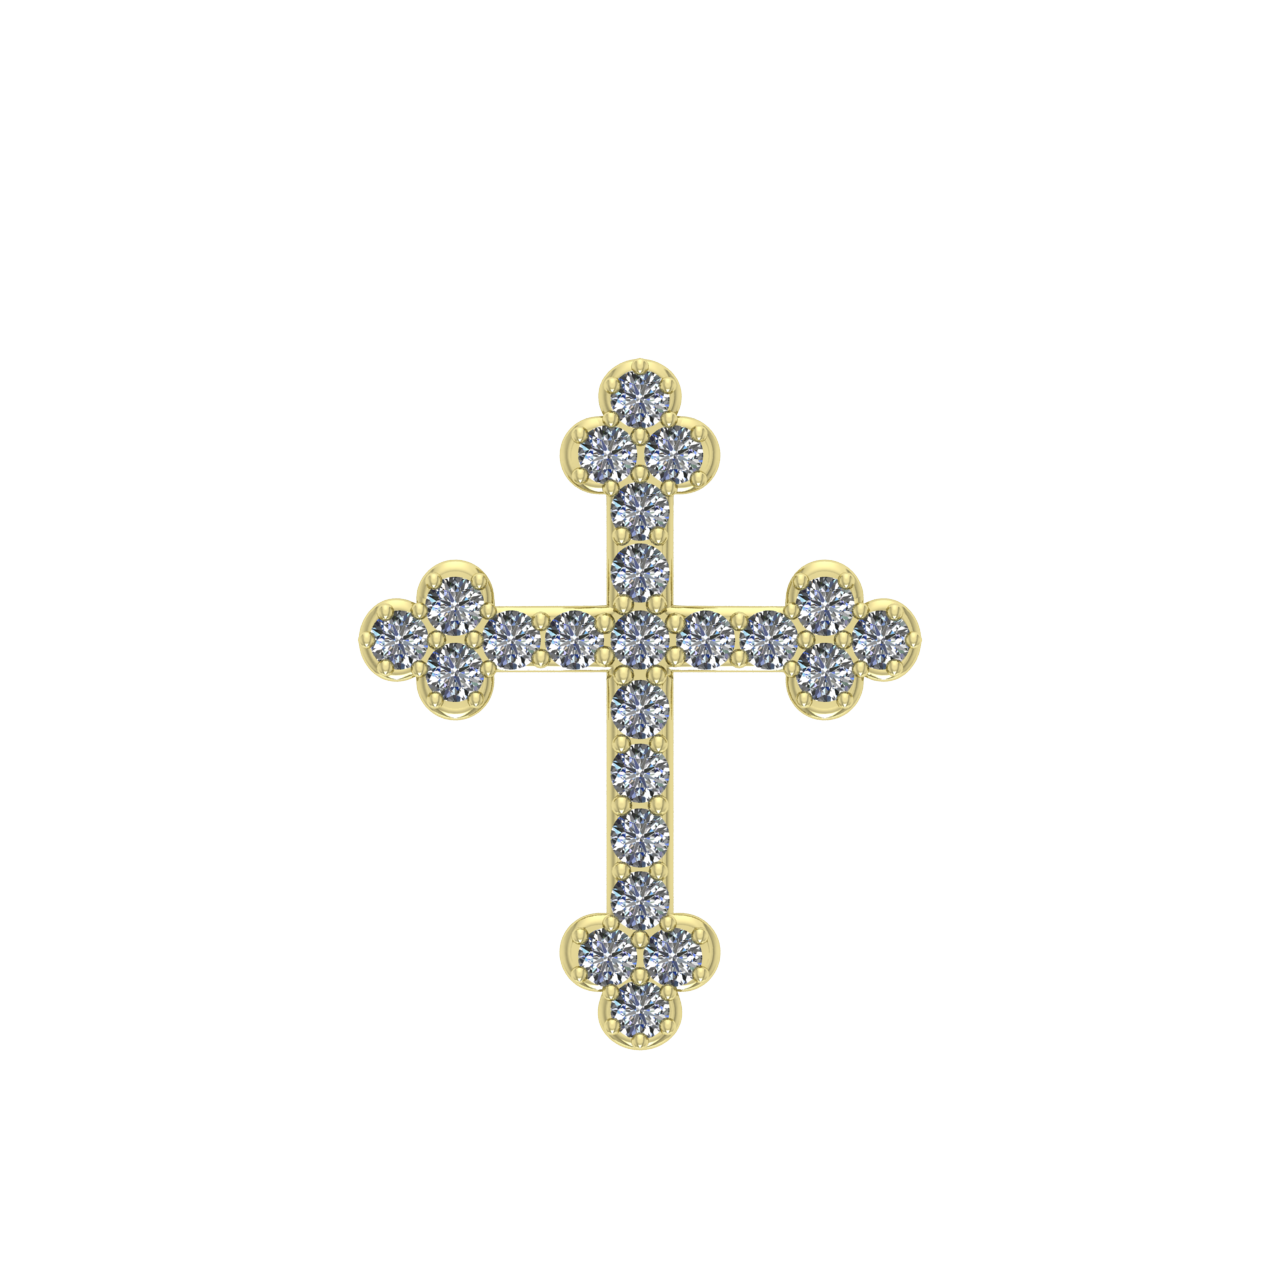 RELIGIOUS CROSS  1.50mm ROUND PENDANT